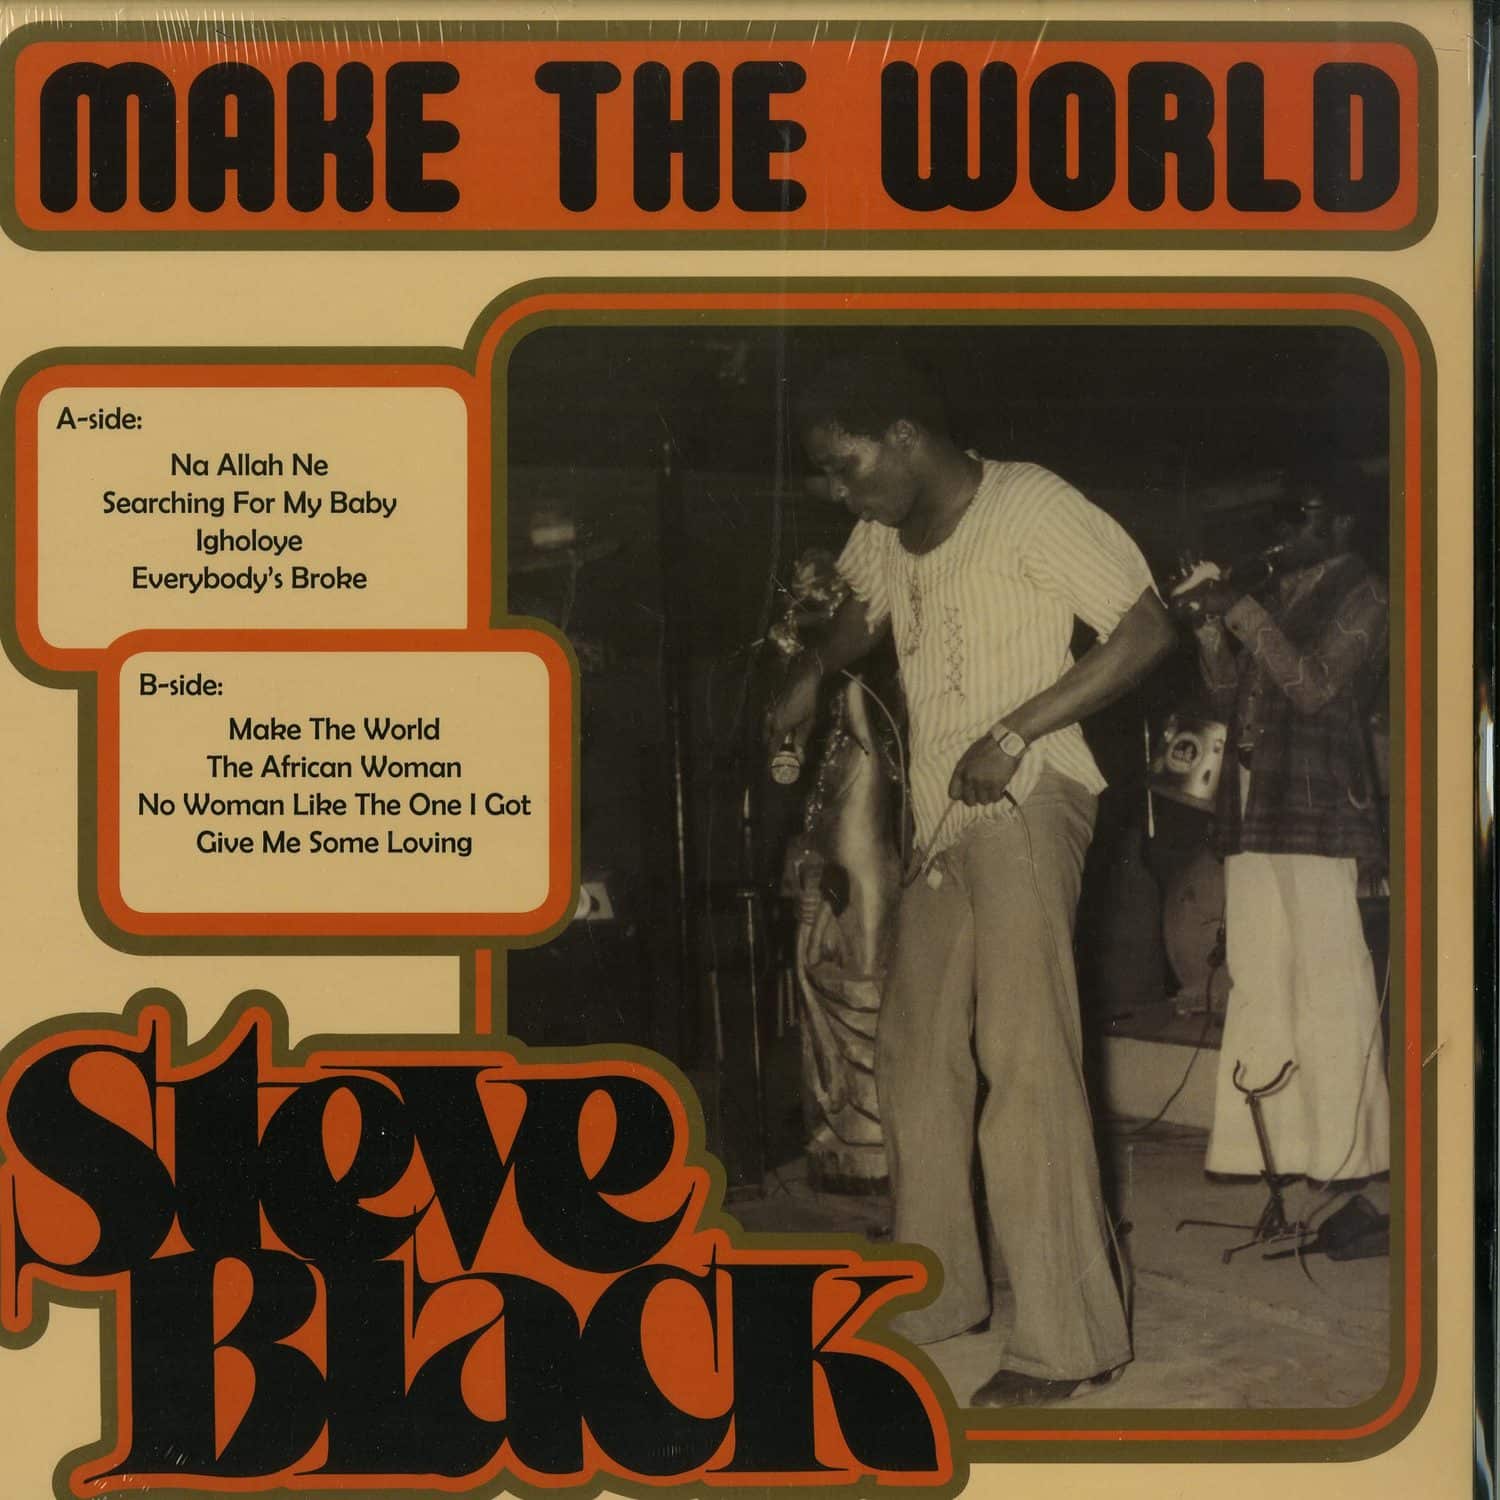 Steve Black - MAKE THE WORLD 